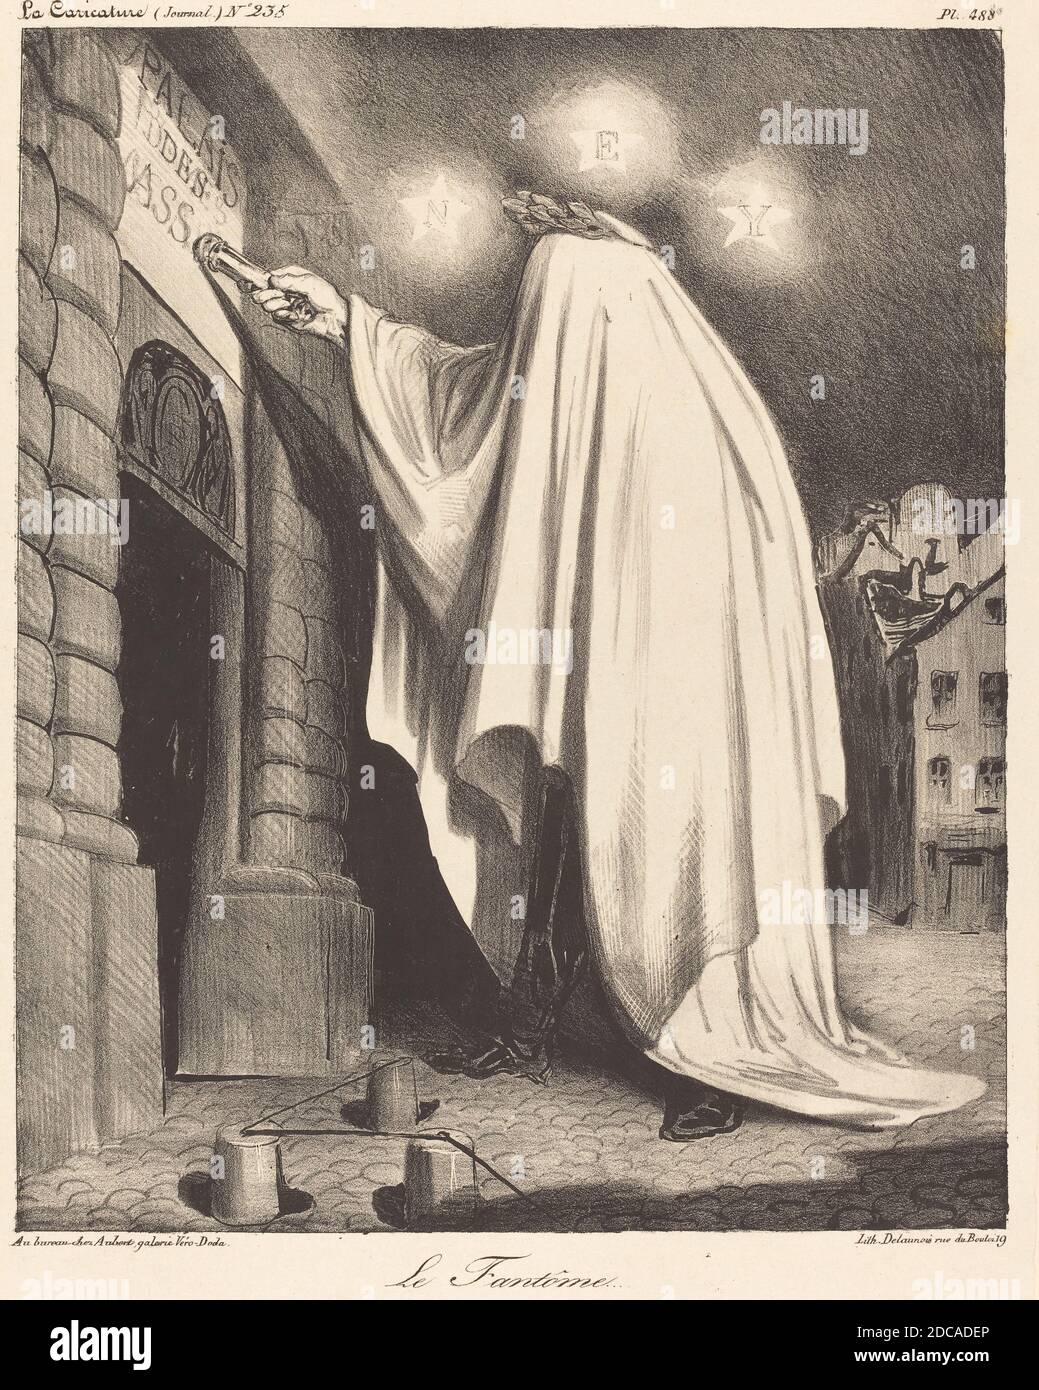 Honoré Daumier, (artist), French, 1808 - 1879, Le Fantome, La Caricature: pl. 488, (series), 1835, lithograph Stock Photo